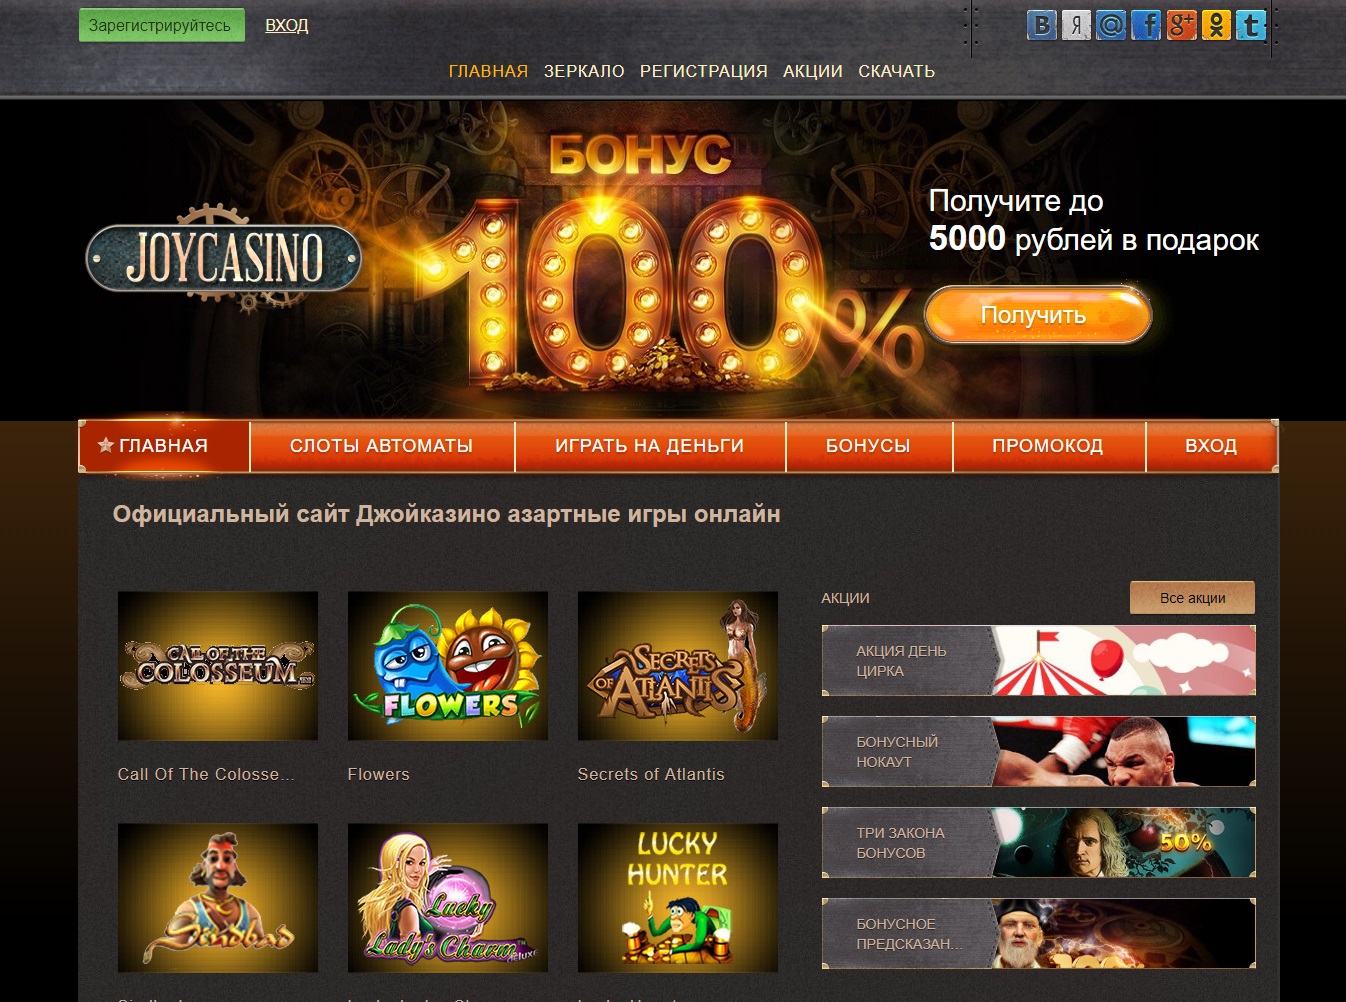 Джойказино мобильная версия играть онлайн бесплатно casino x мобильная версия